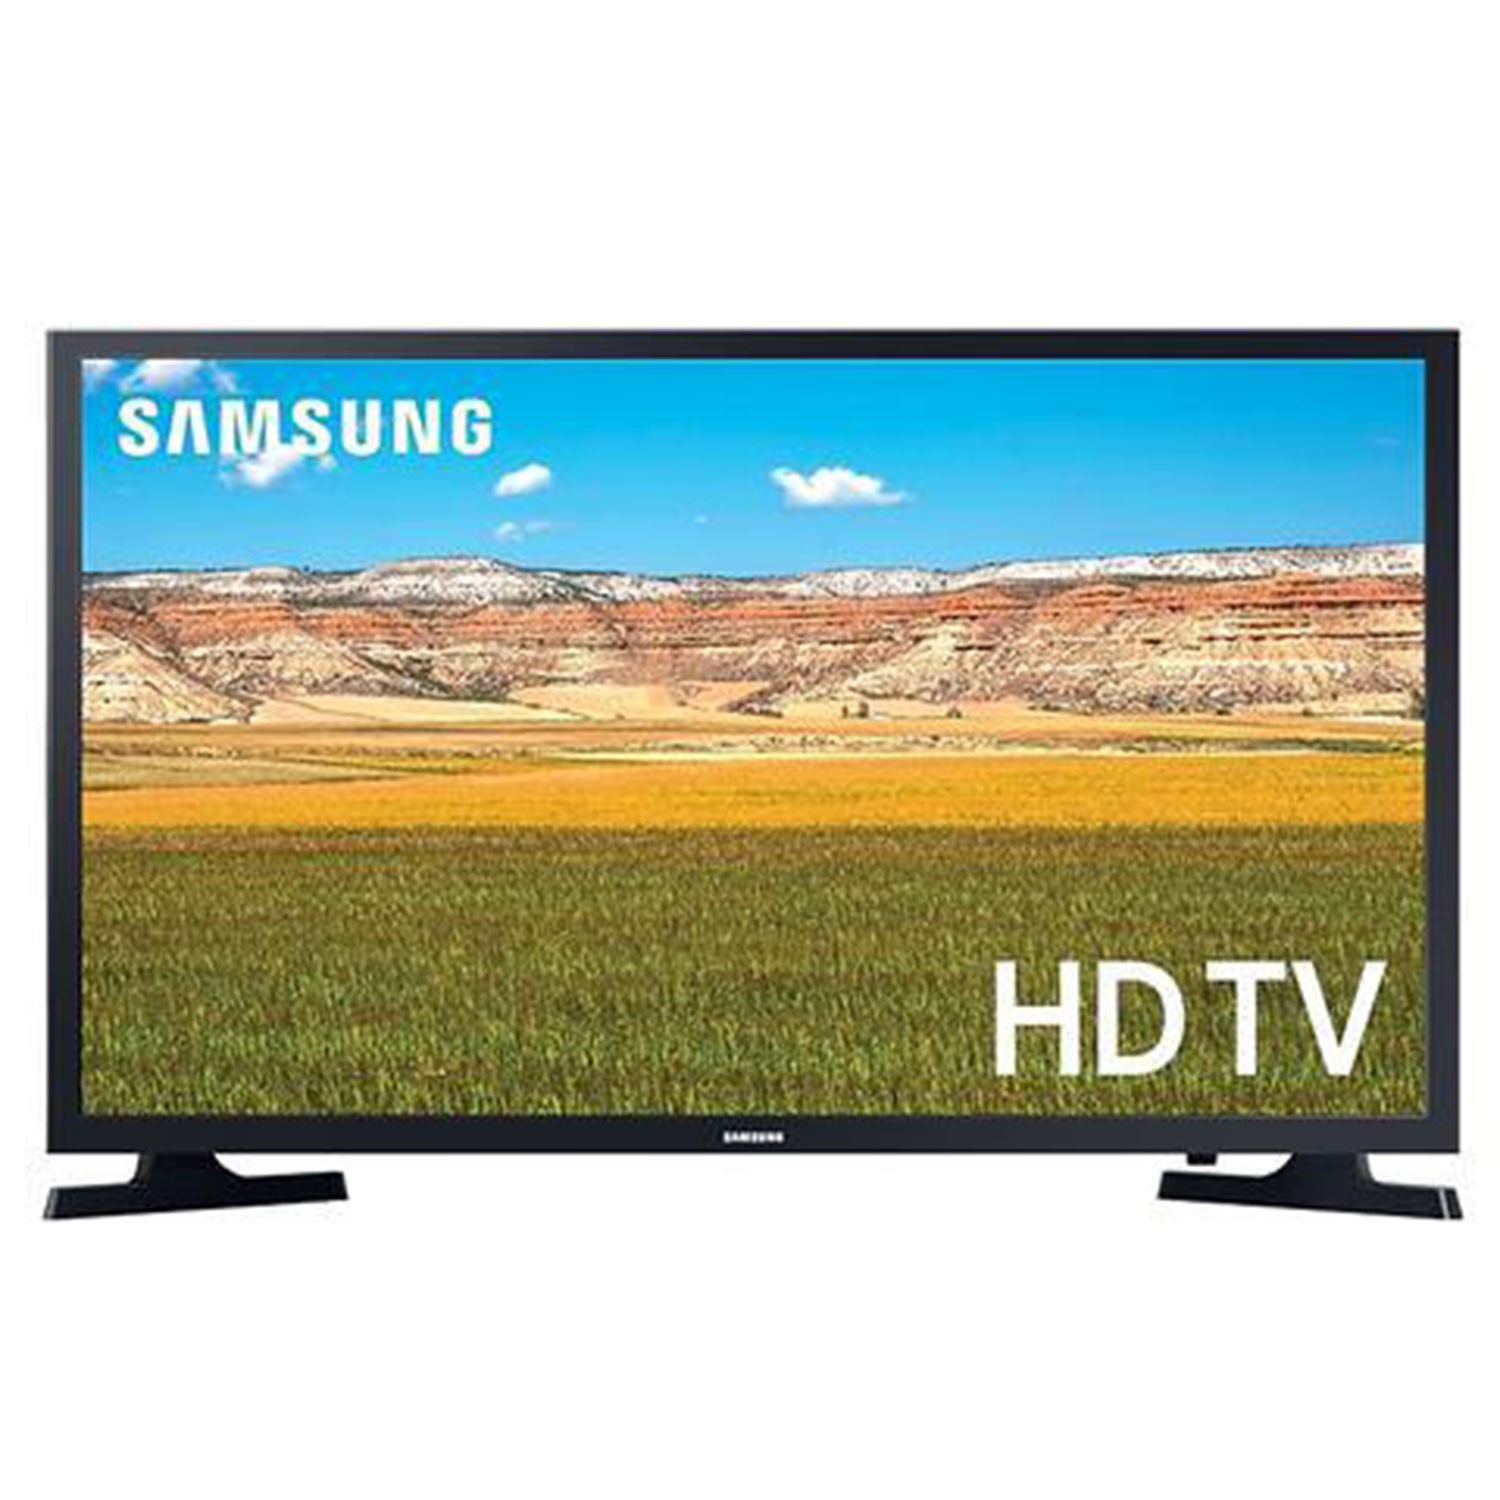 Vendita online Televisioni SAMSUNG TV LED HD Smart TV 32'' 32T4302 costo  269,99 €  spedizione in 24h-48h pagmamento PayPal Contrassegno